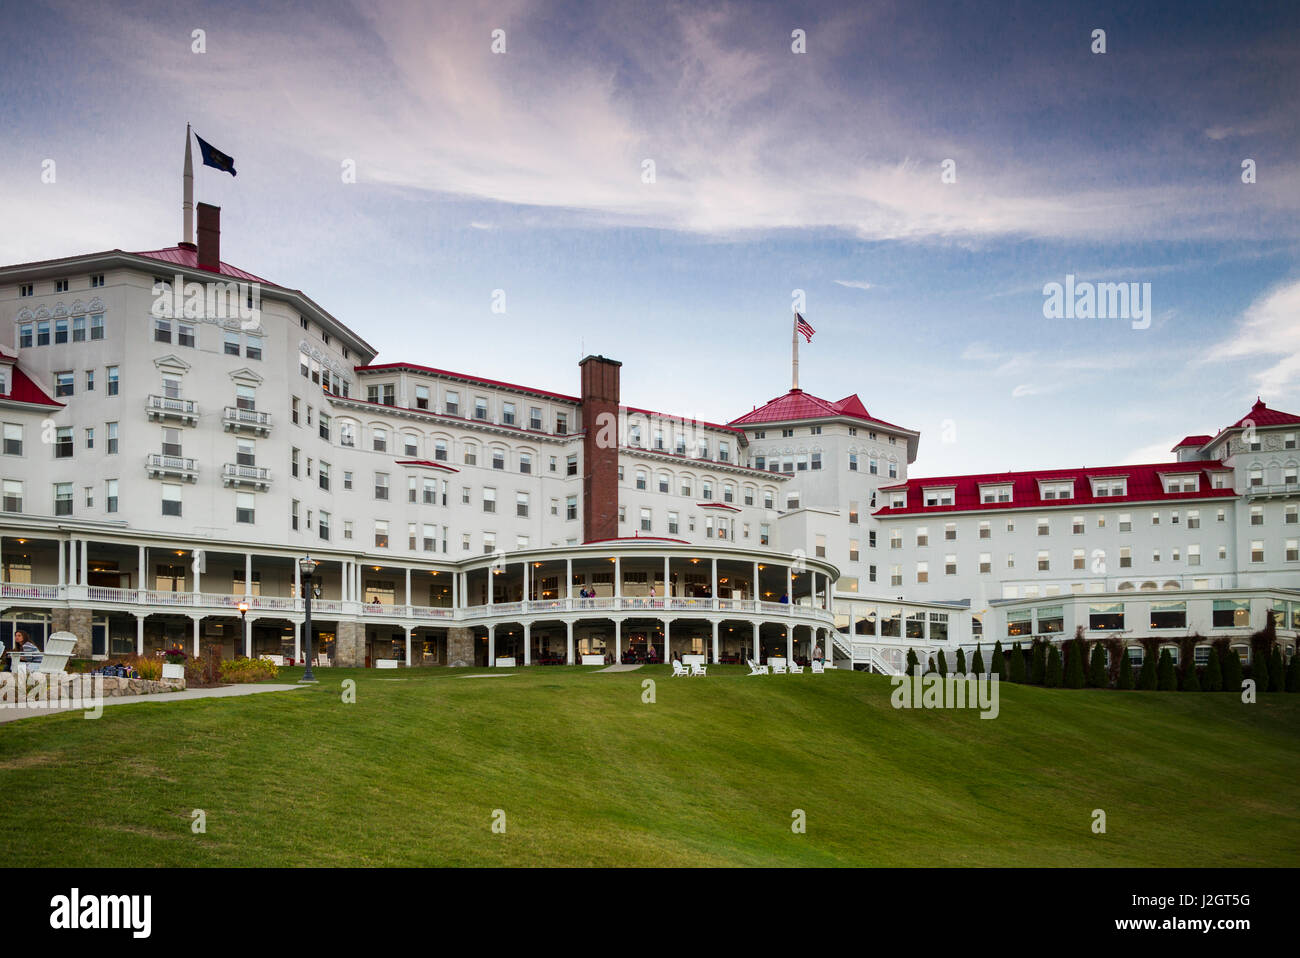 USA, New Hampshire, White Mountains, Bretton Woods, Mount Washington Hotel, exterior Stock Photo